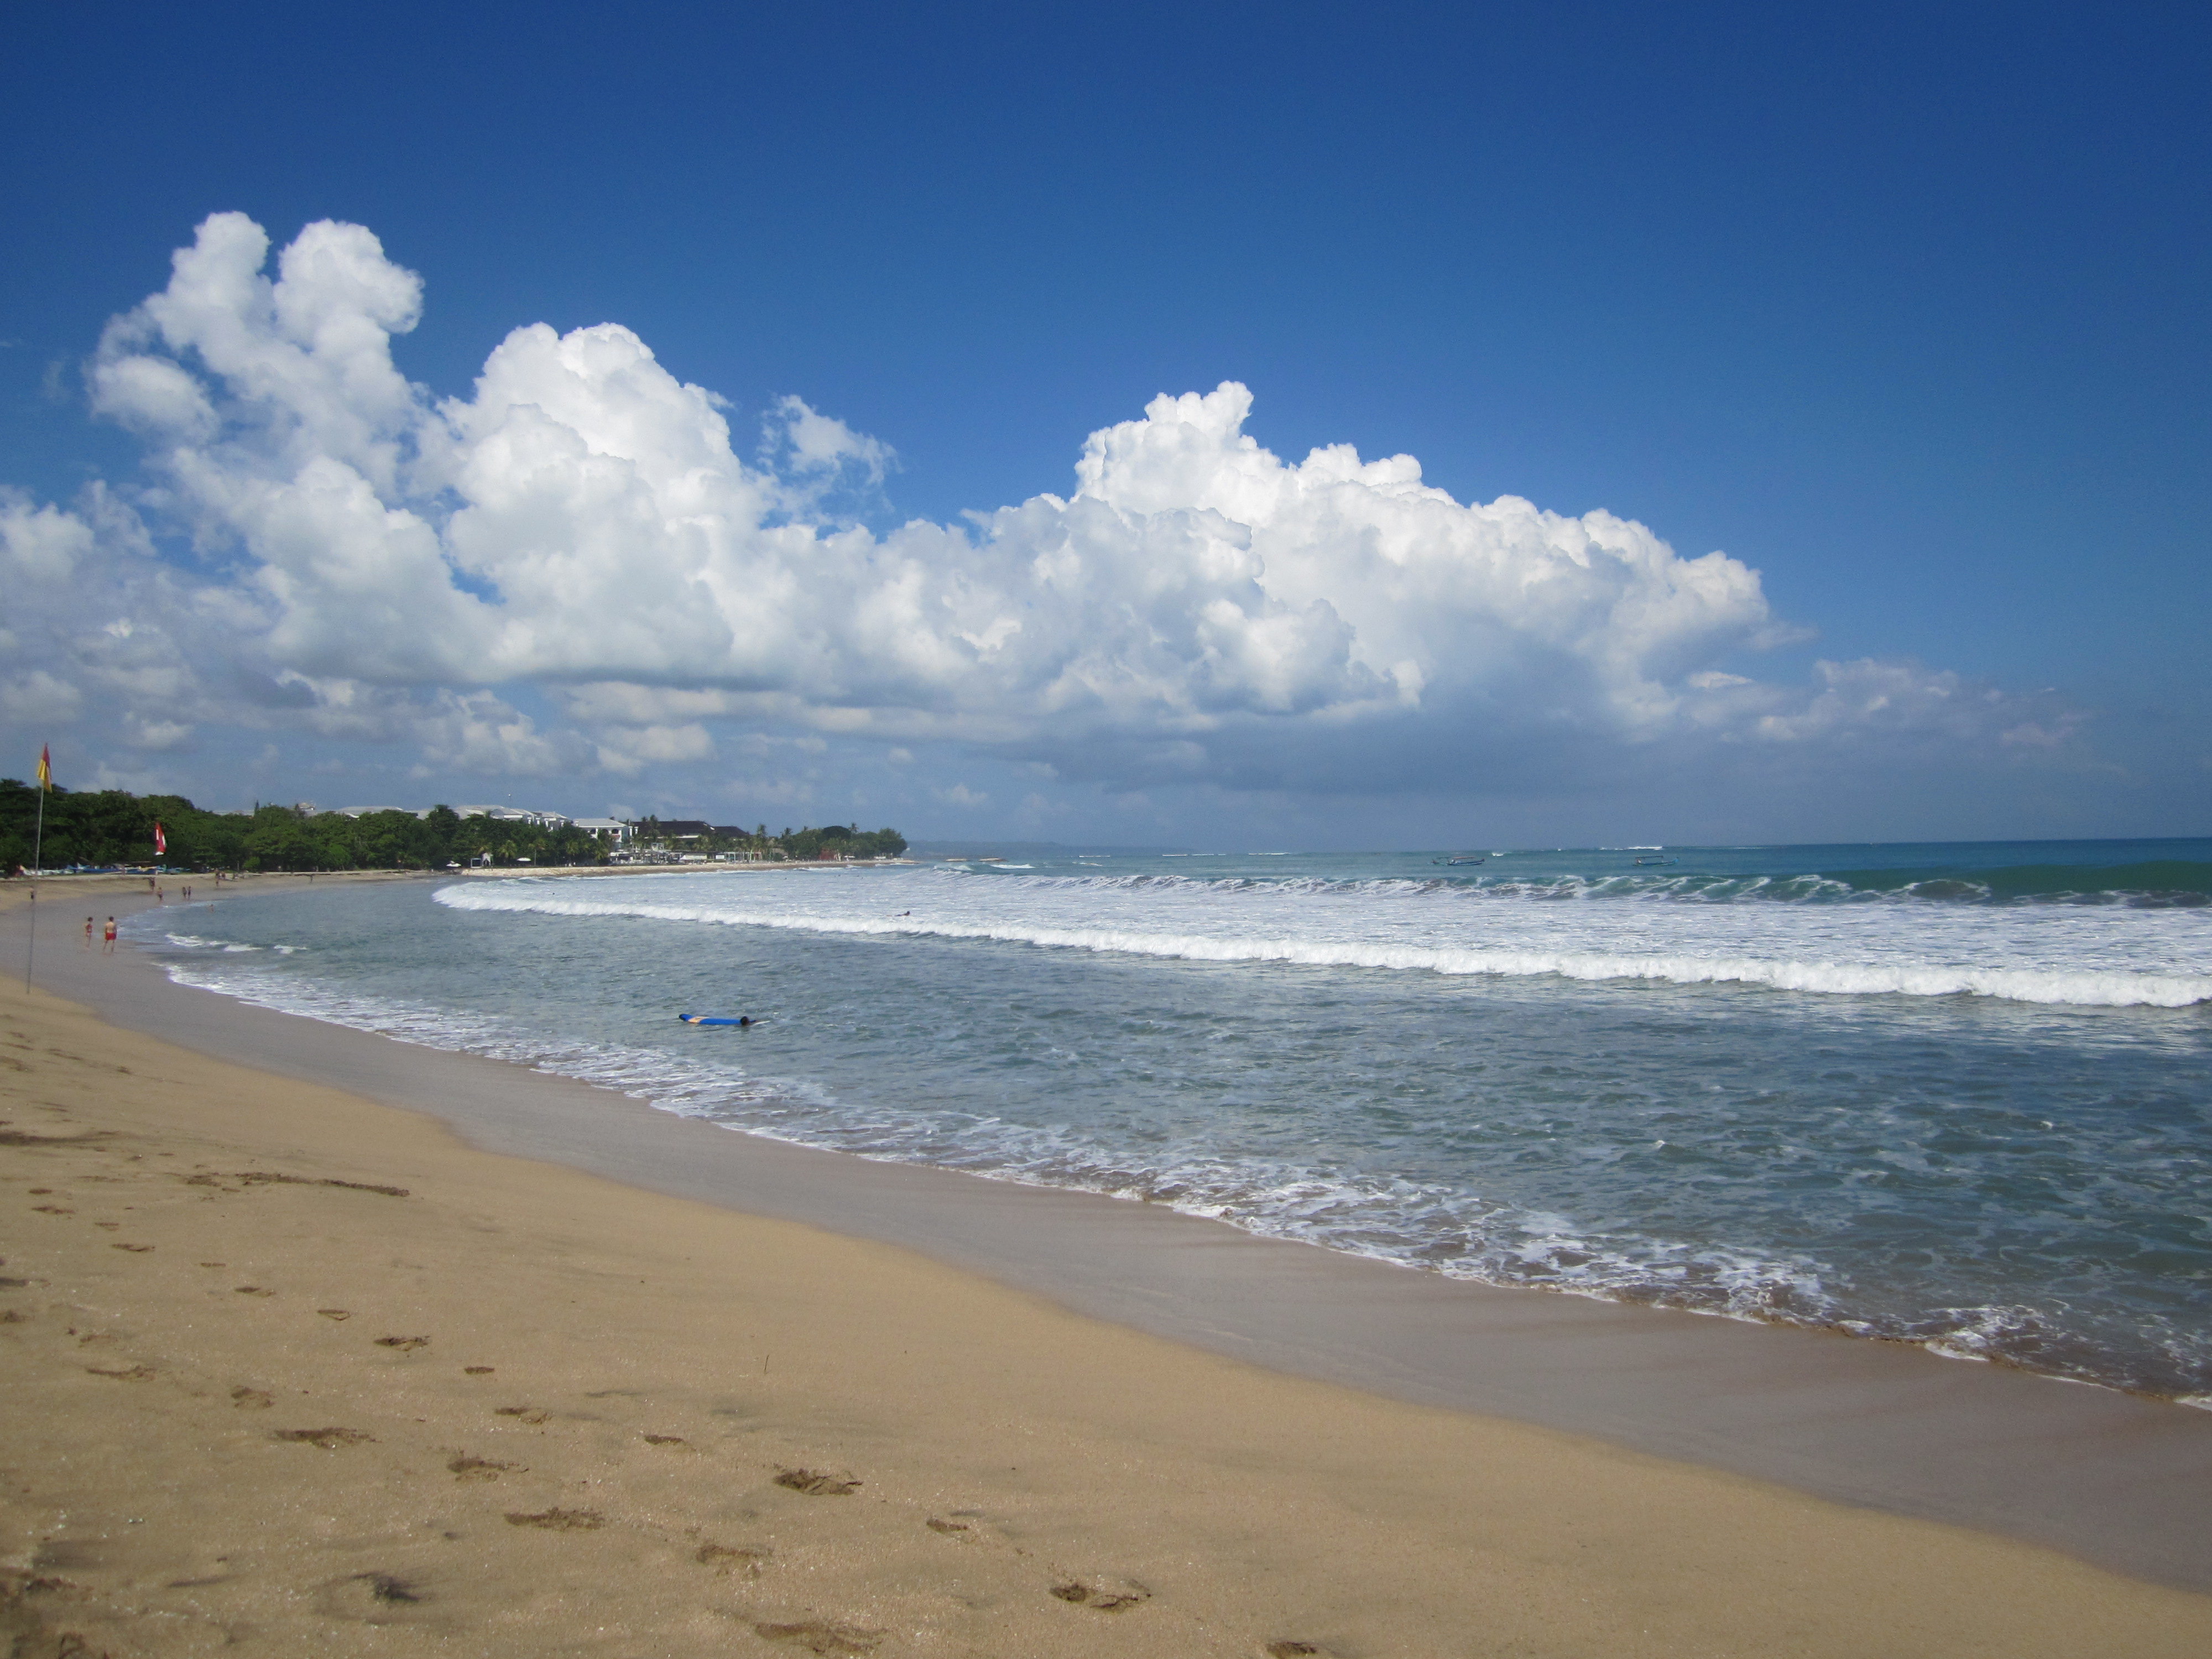 【携程攻略】巴厘岛库塔海滩适合家庭亲子旅游吗,库塔海滩家庭亲子